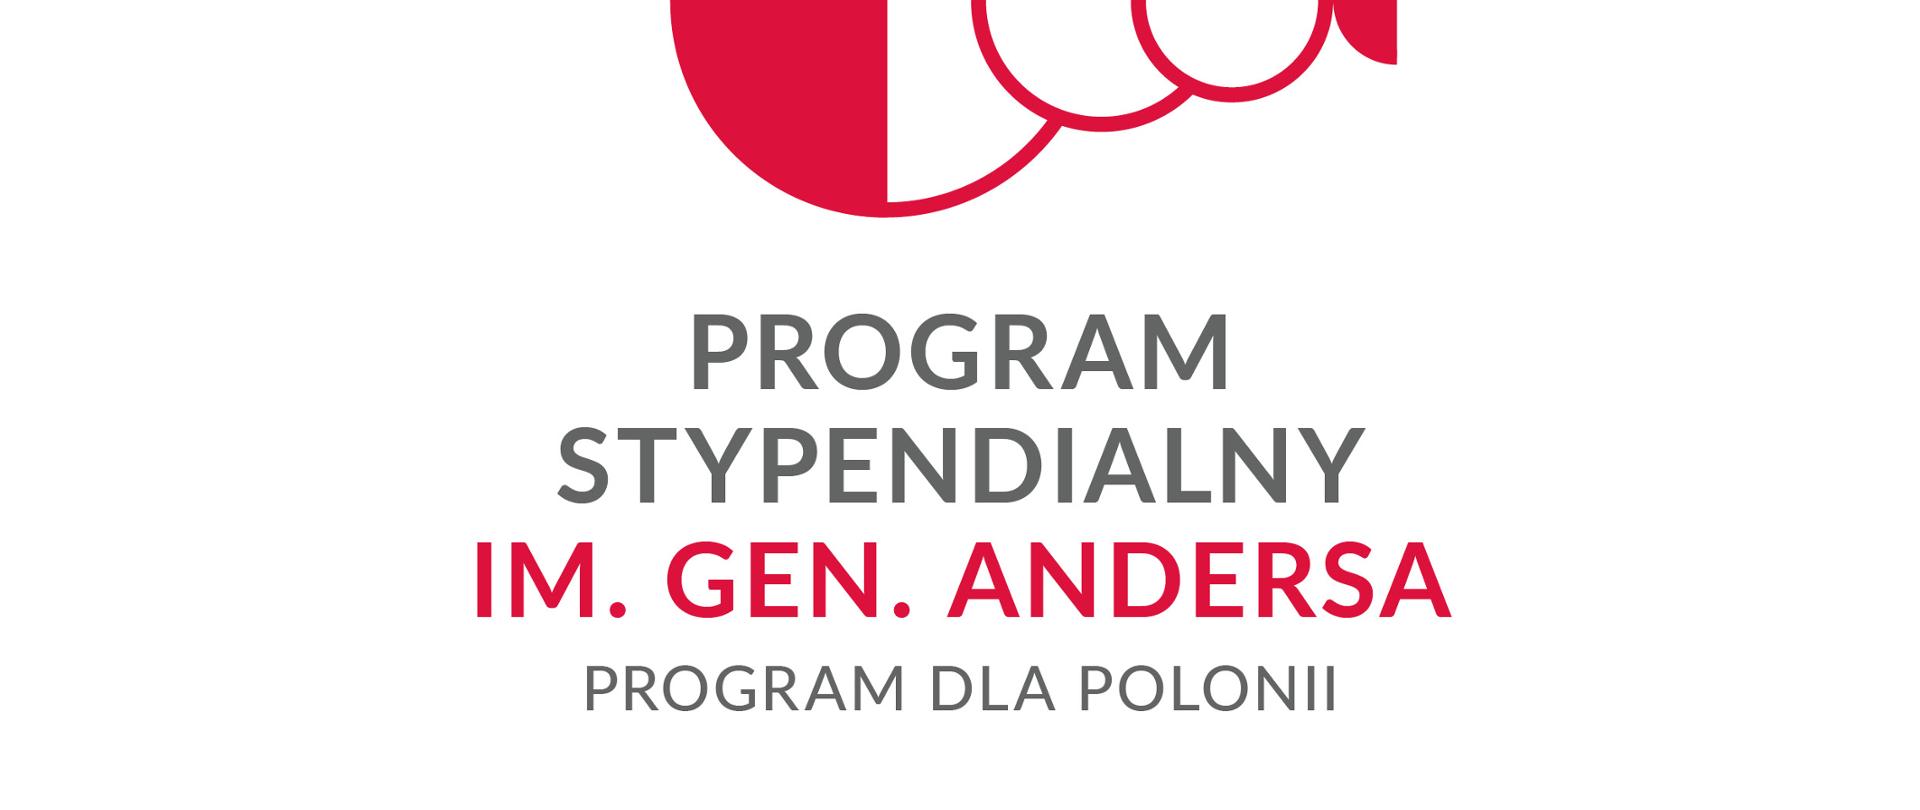 Program stypendialny dla Polonii im. gen. Andersa logo